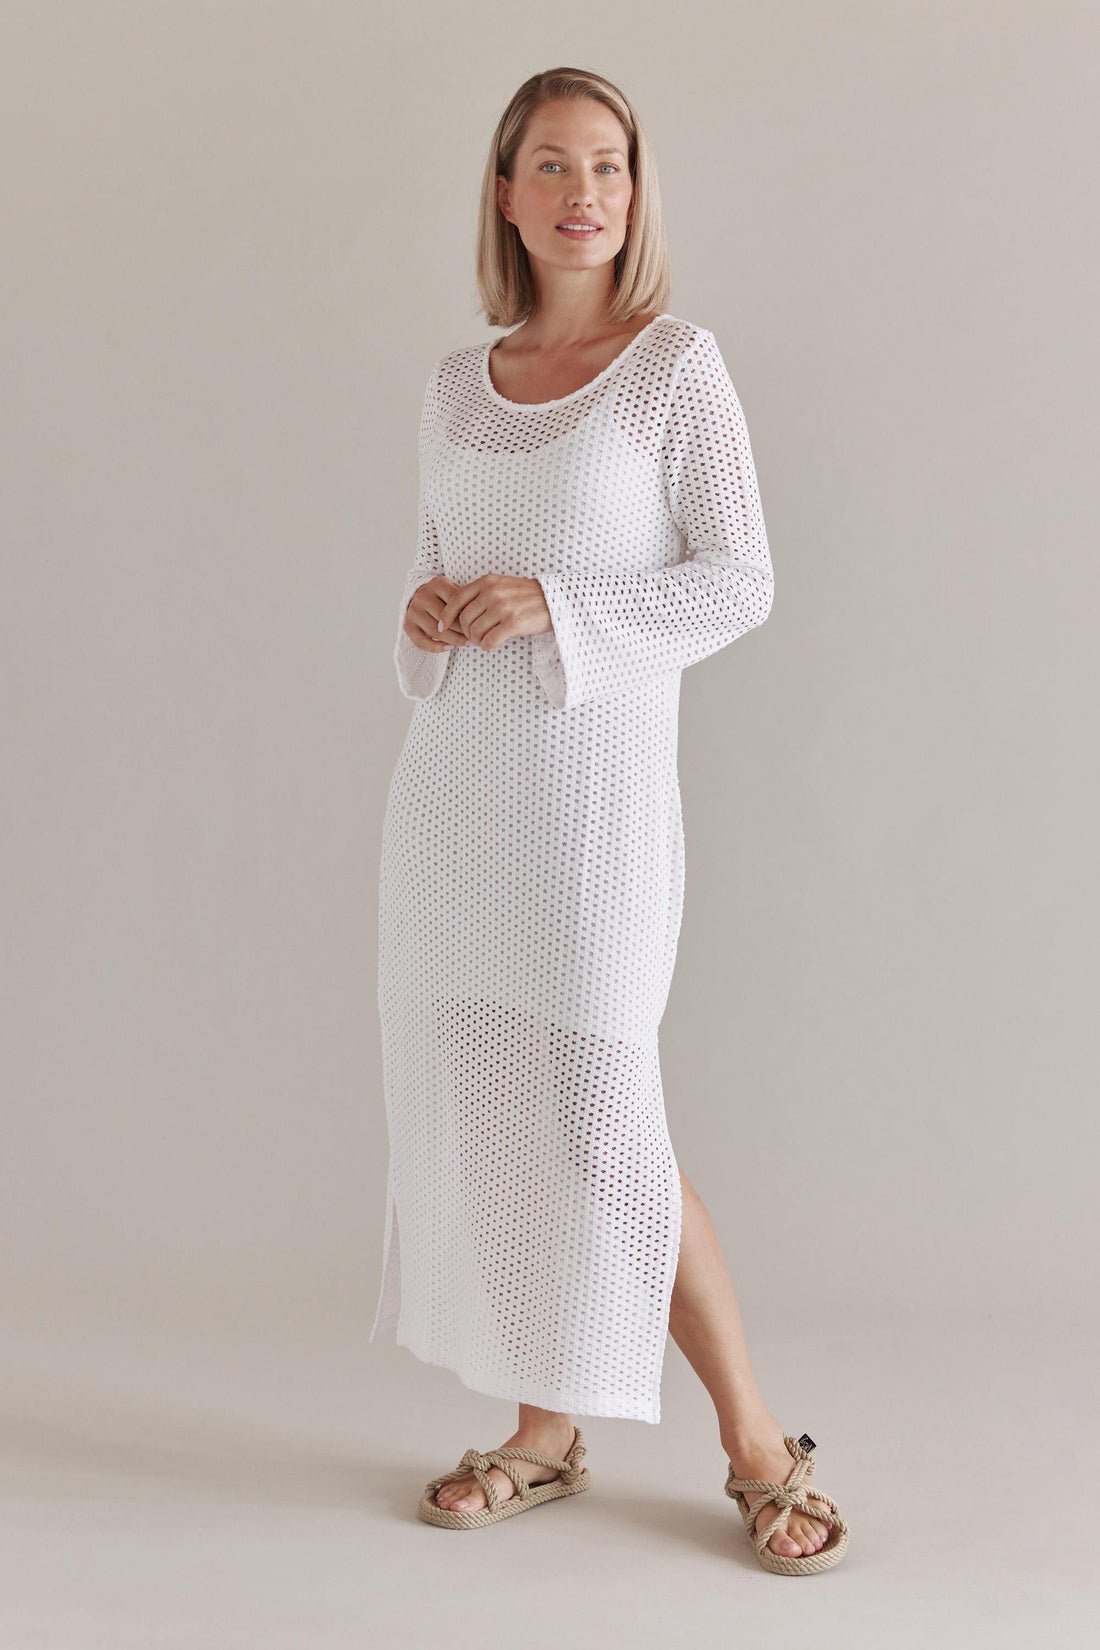 Crochet Optik Maxi Kleid Mit Rückenausschnitt Und Seitenschlitzen